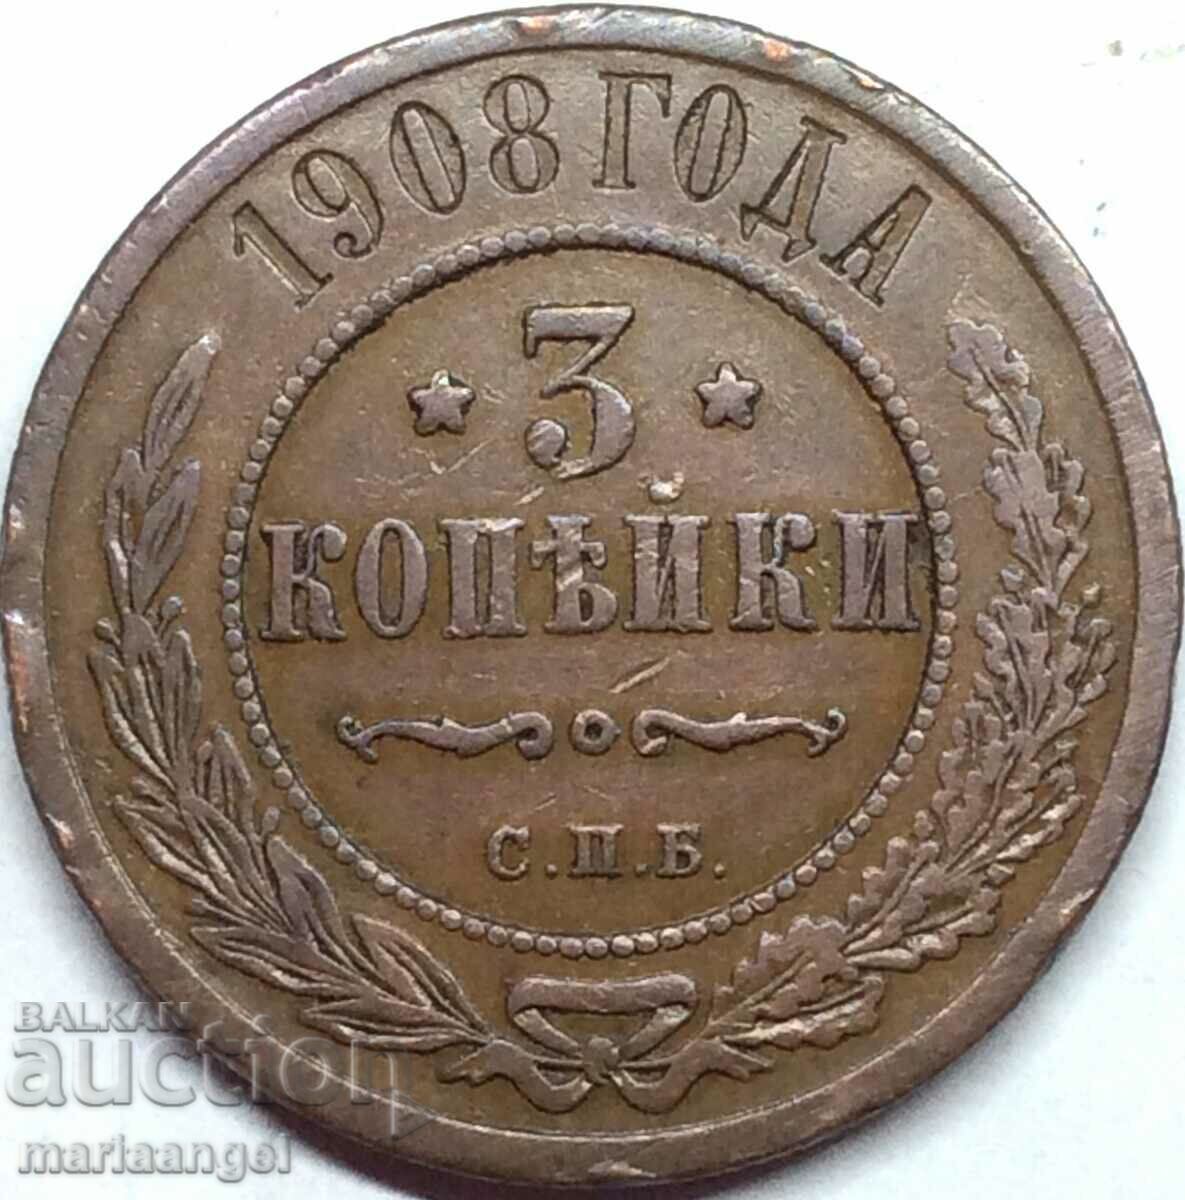 3 καπίκια 1908 Ρωσία 28 χιλιοστά χαλκός